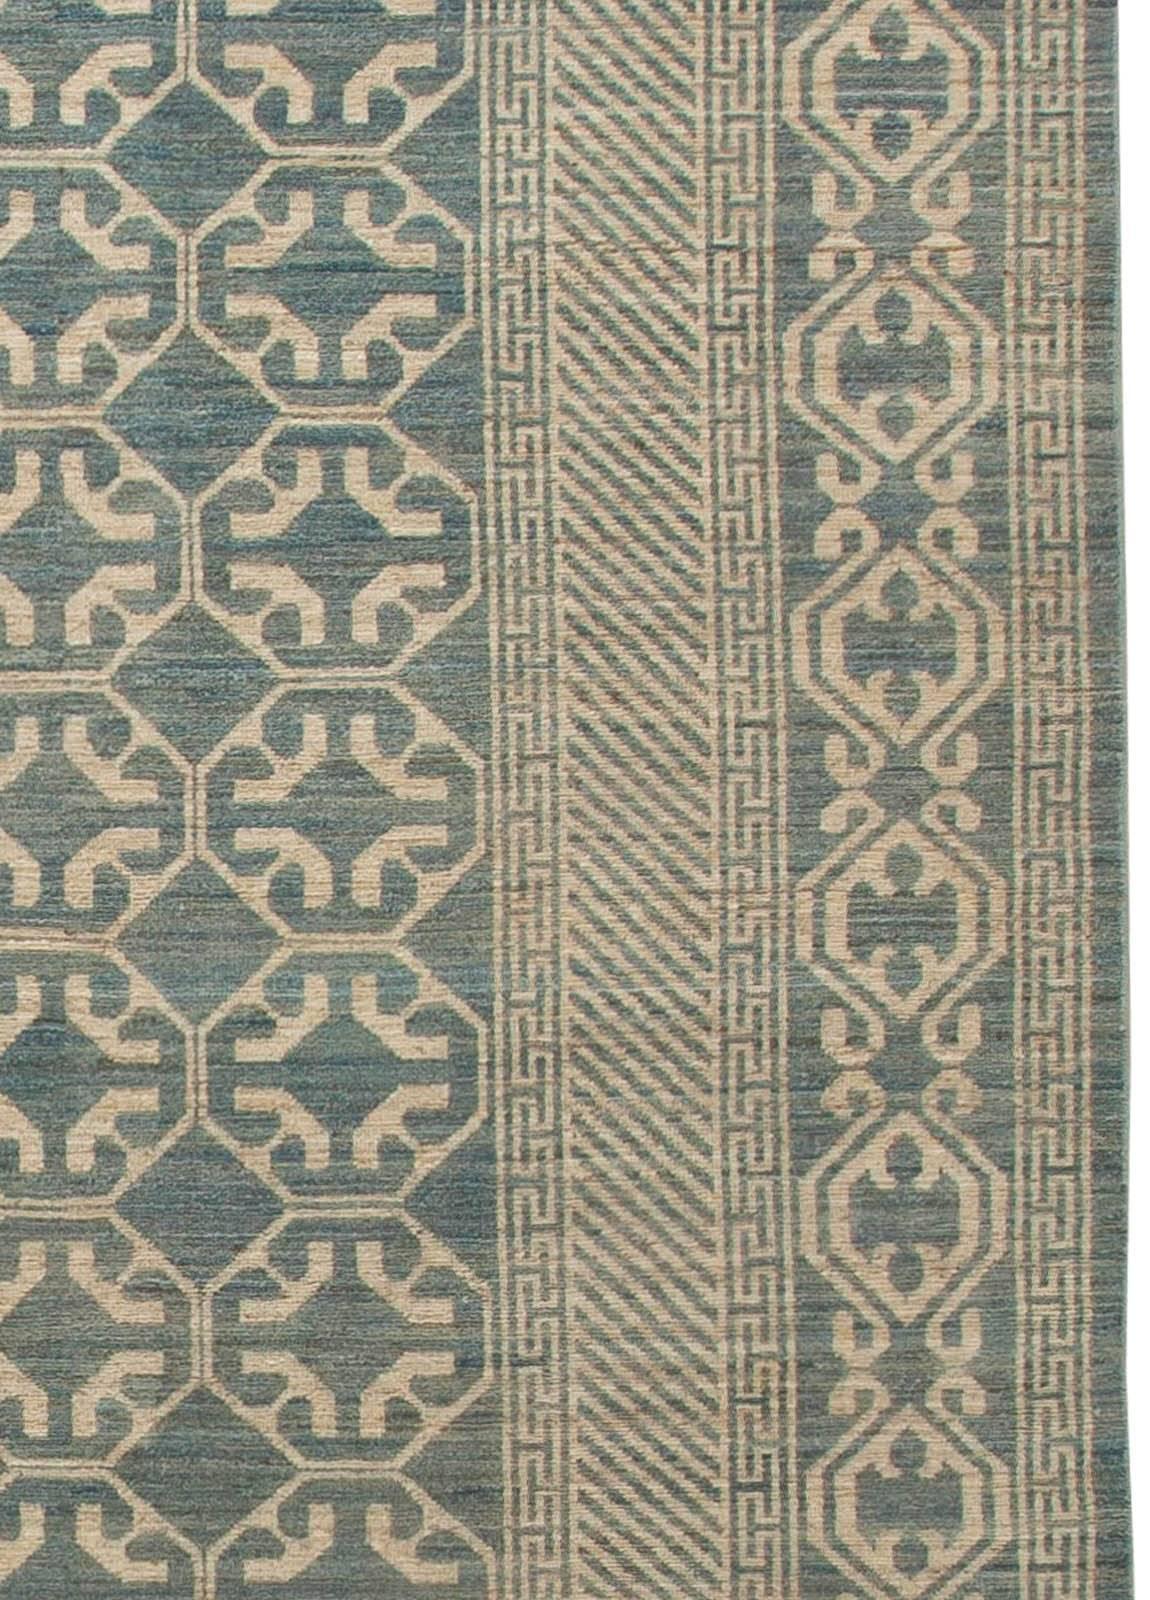 Contemporary New Khotan Carpet